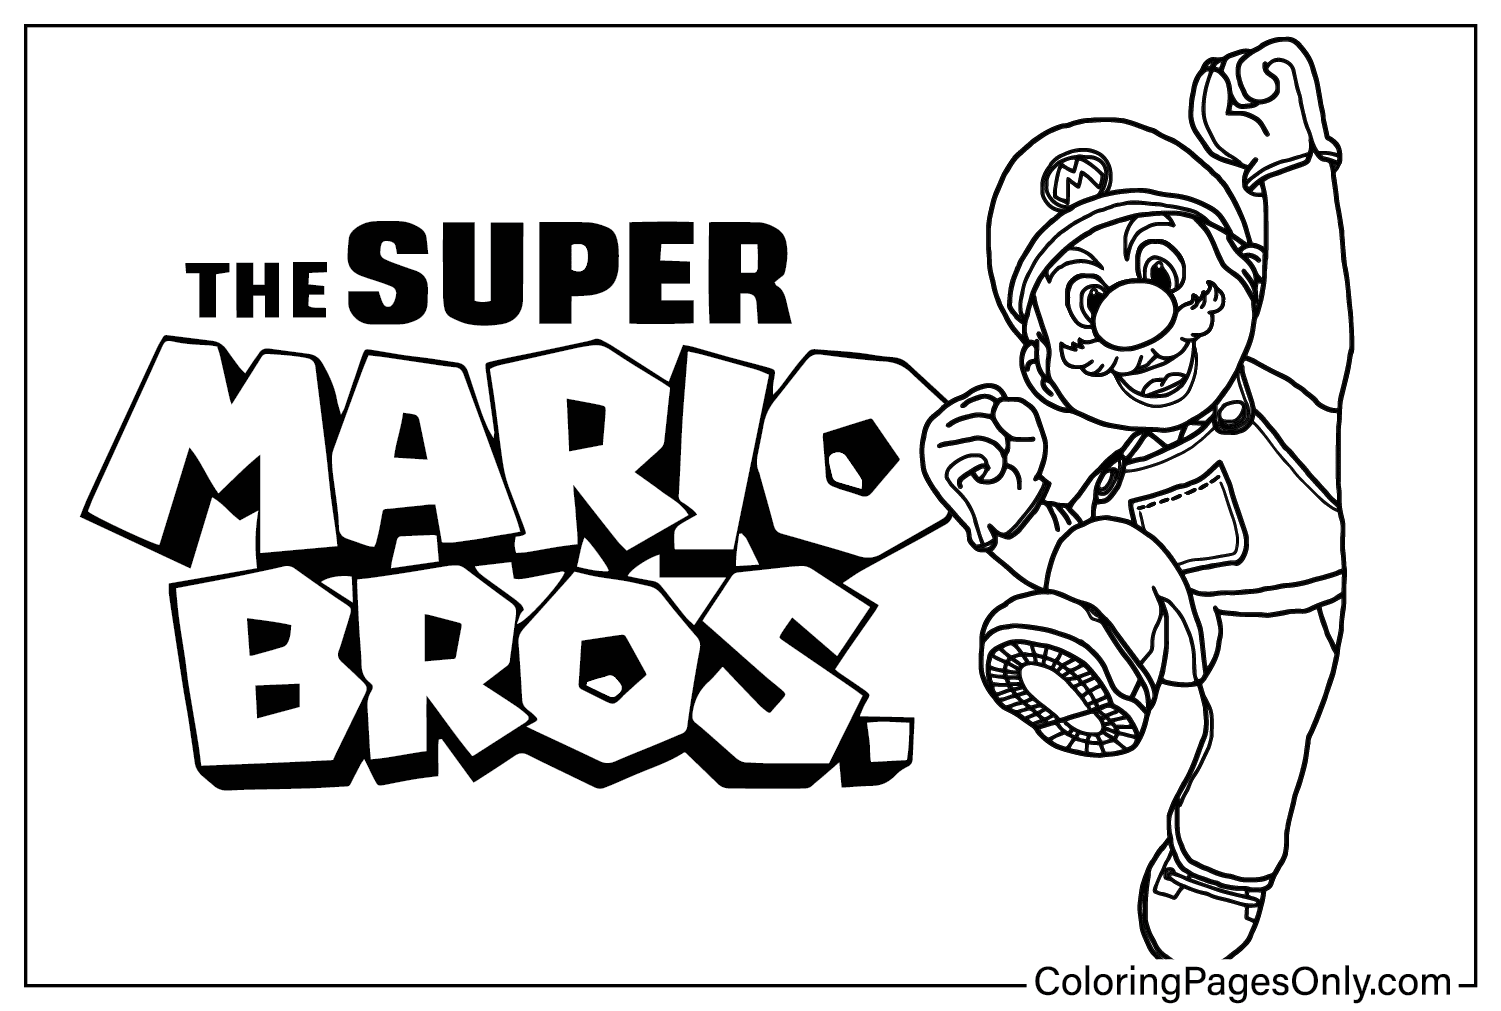 صفحة ملونة لفيلم Super Mario Bros. من فيلم Super Mario Bros